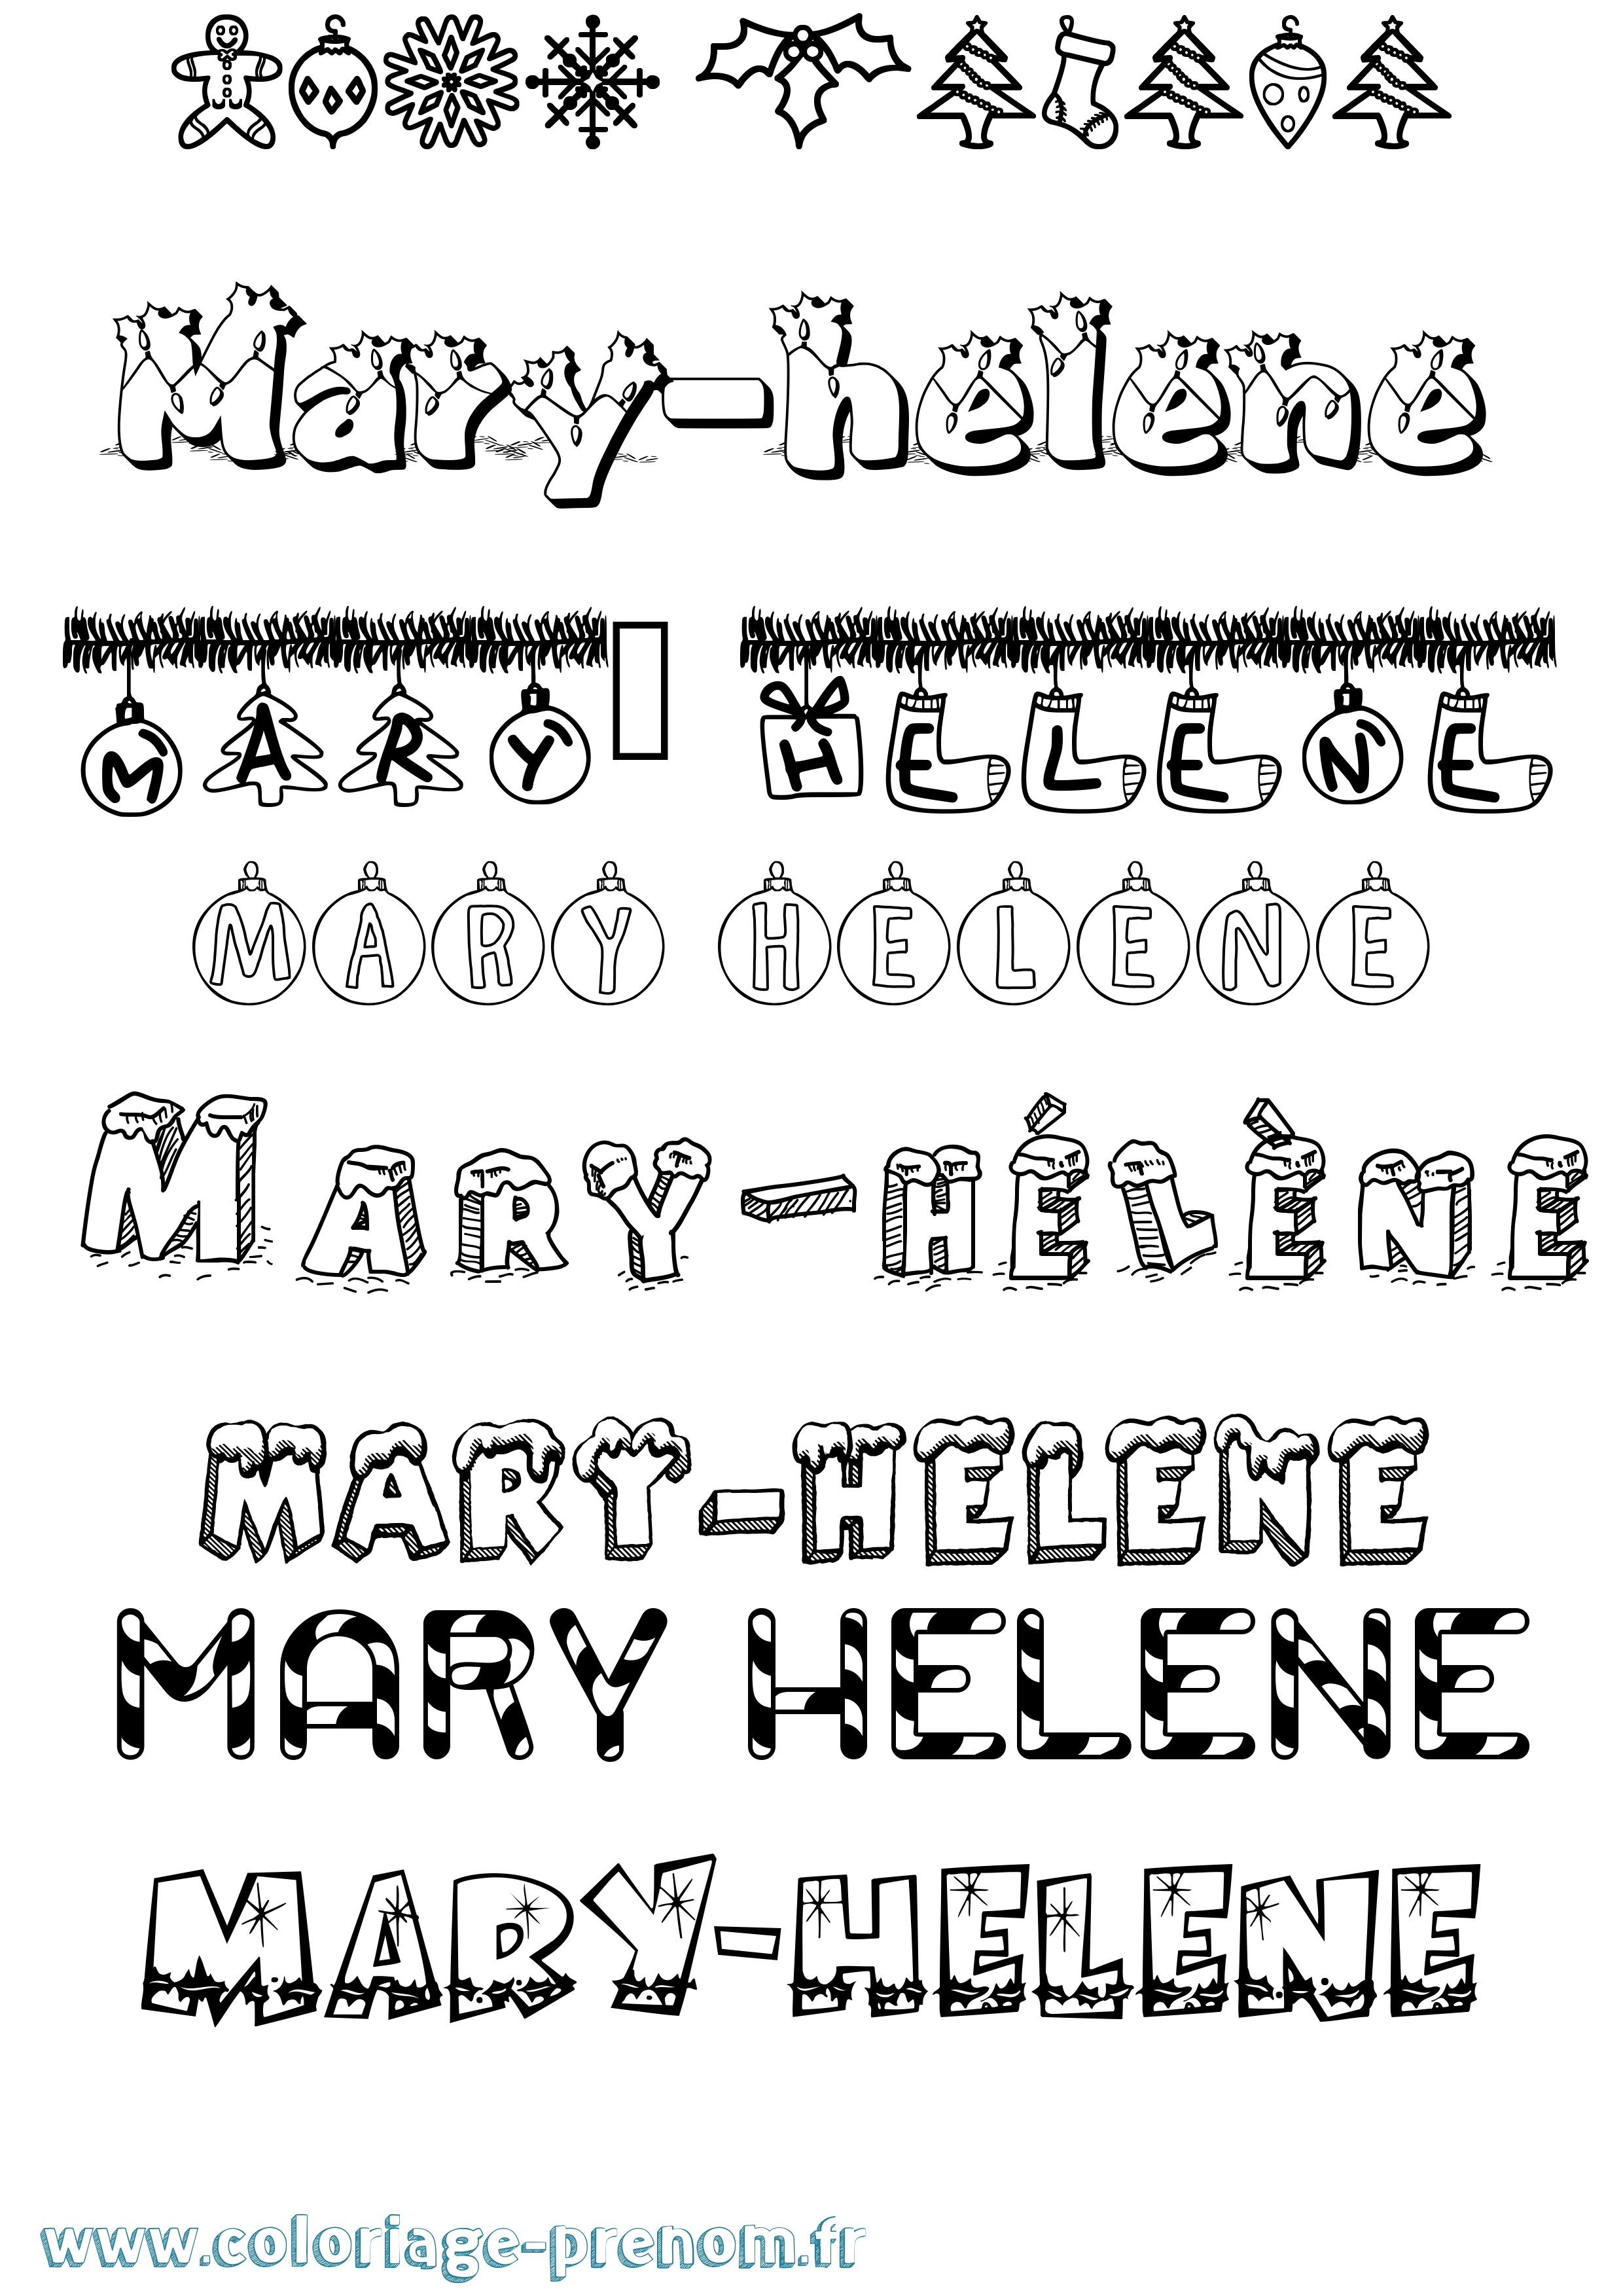 Coloriage prénom Mary-Hélène Noël